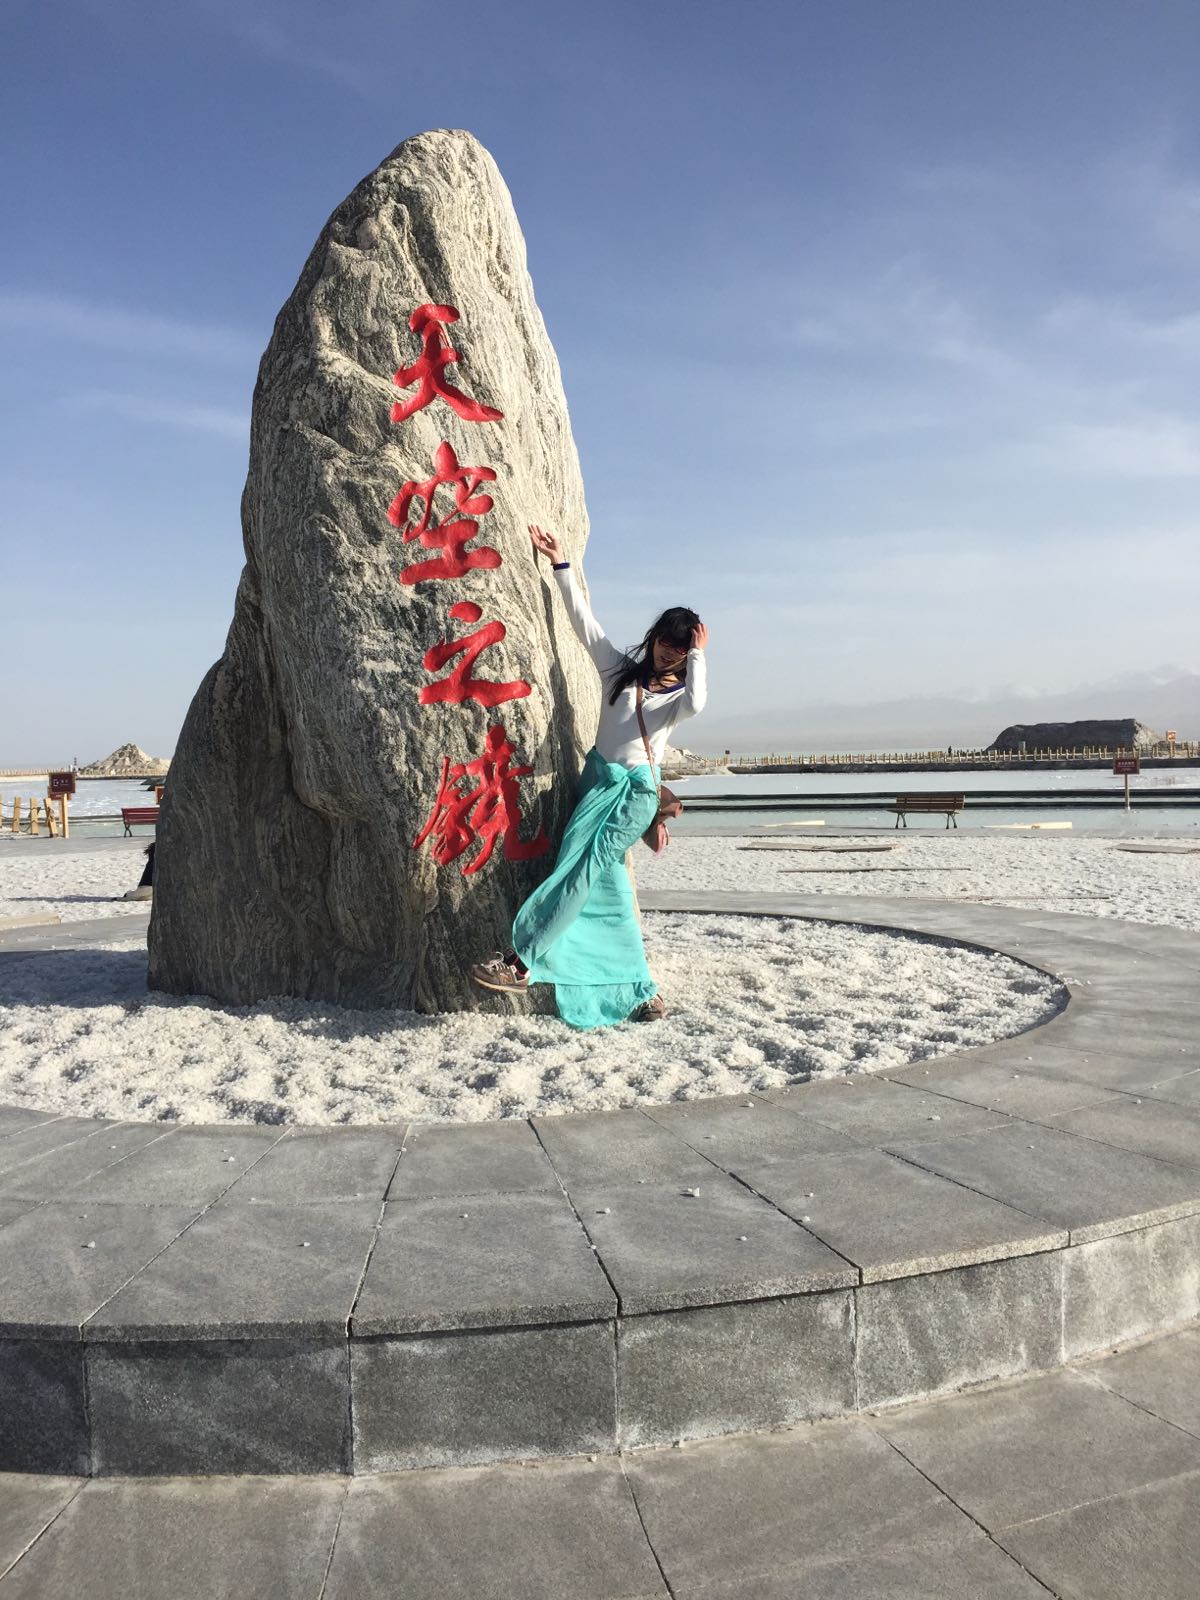 茶卡盐湖是我这次的主要目的，传说的天空之境 女孩子梦想的拍照之地，站在